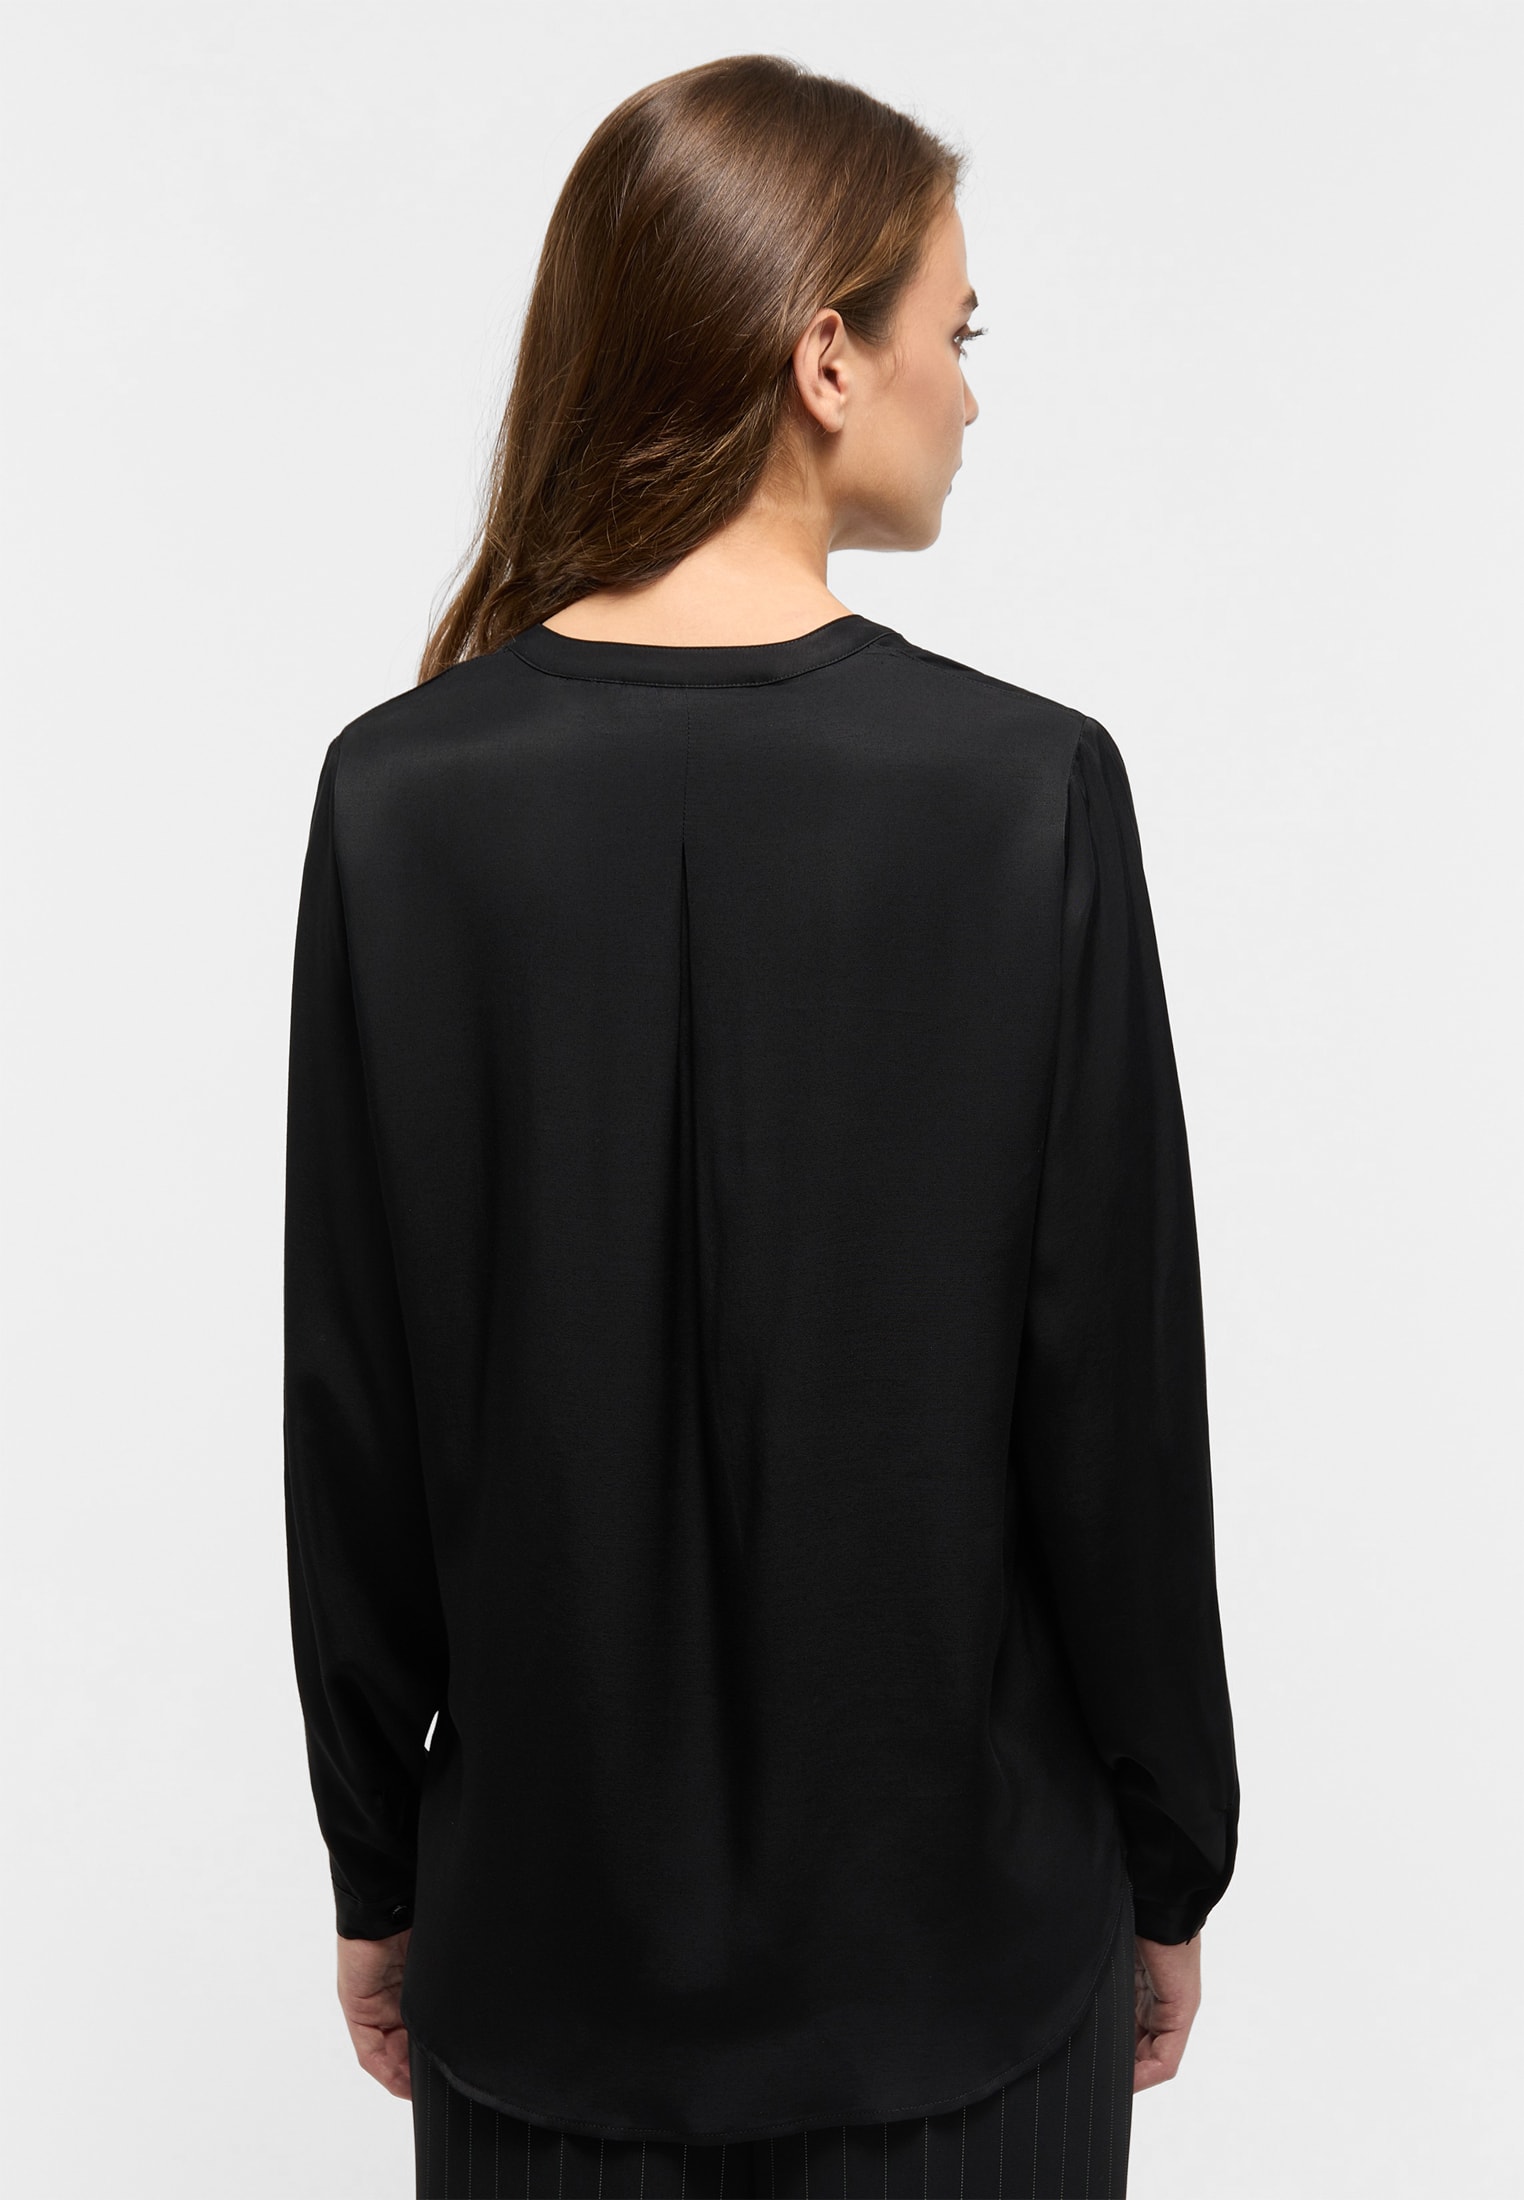 Viscose Shirt Bluse in Langarm | | schwarz 2BL00329-03-91-34-1/1 schwarz 34 | | unifarben